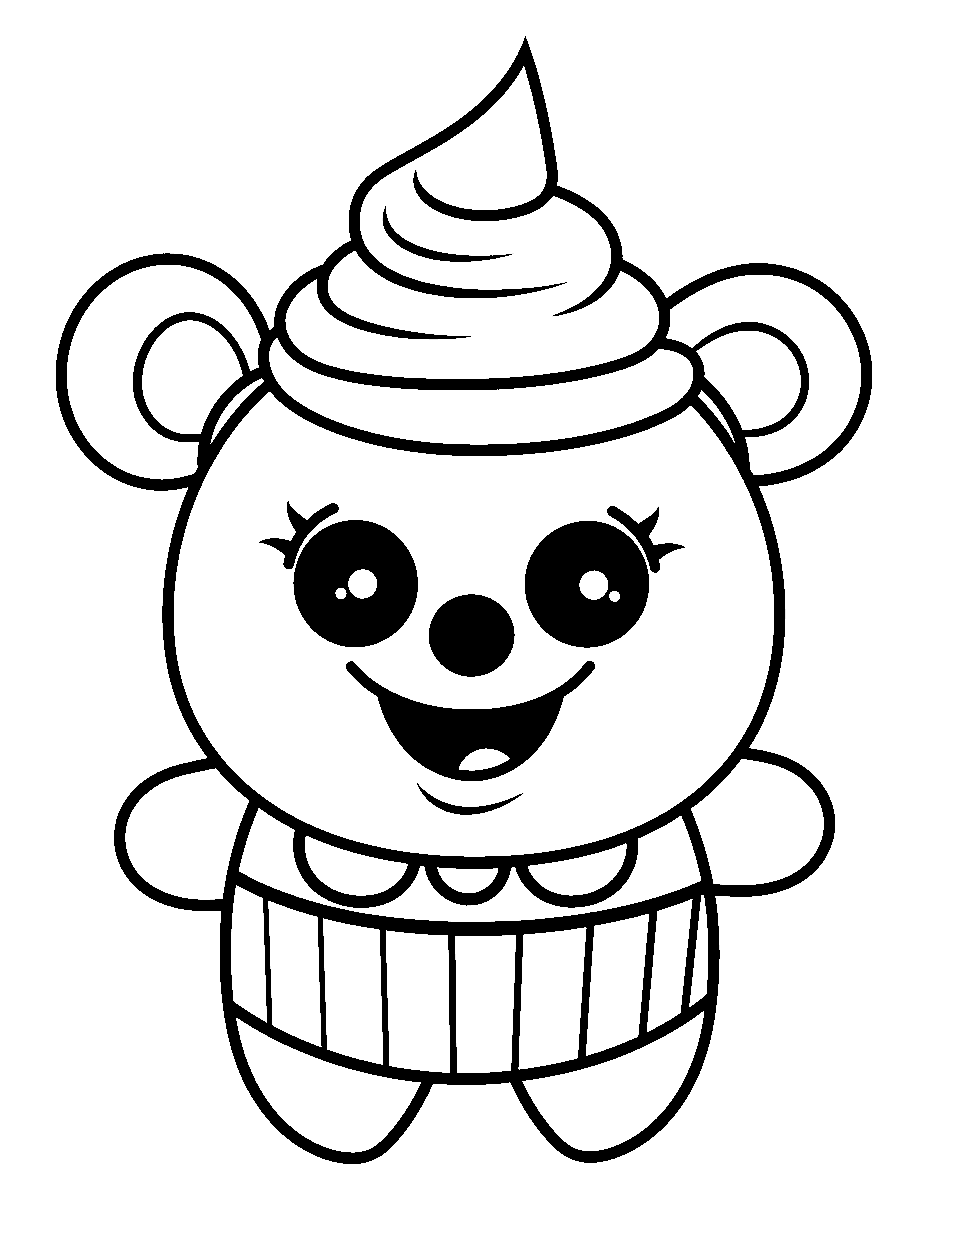 Easy Kawaii Cupcake Character Coloring Page - An easy-to-draw kawaii-style cupcake character with big, cute eyes.